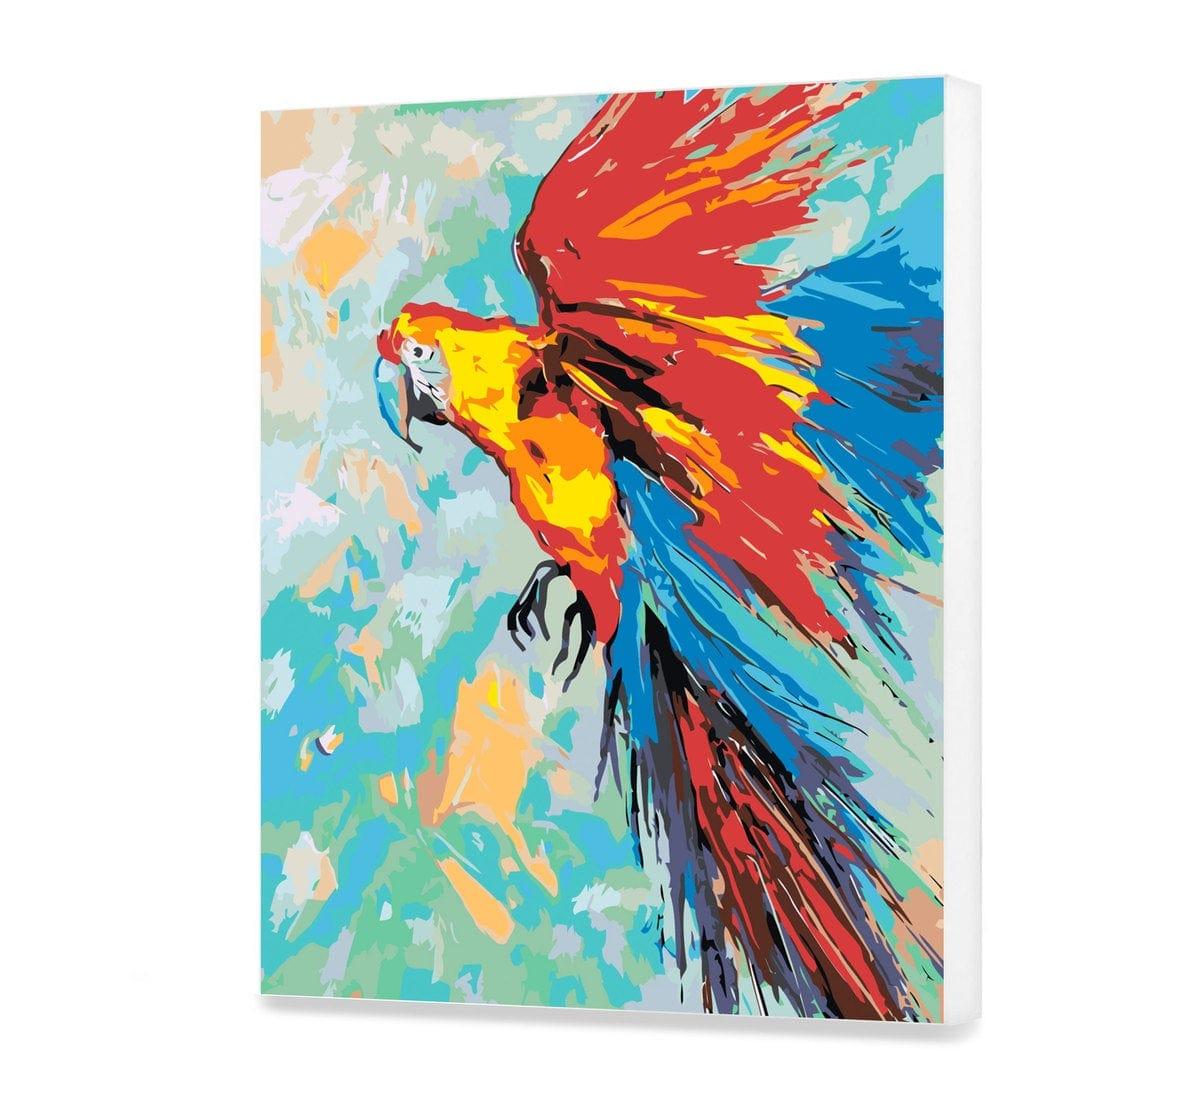 Kolorowa Papuga HP0157